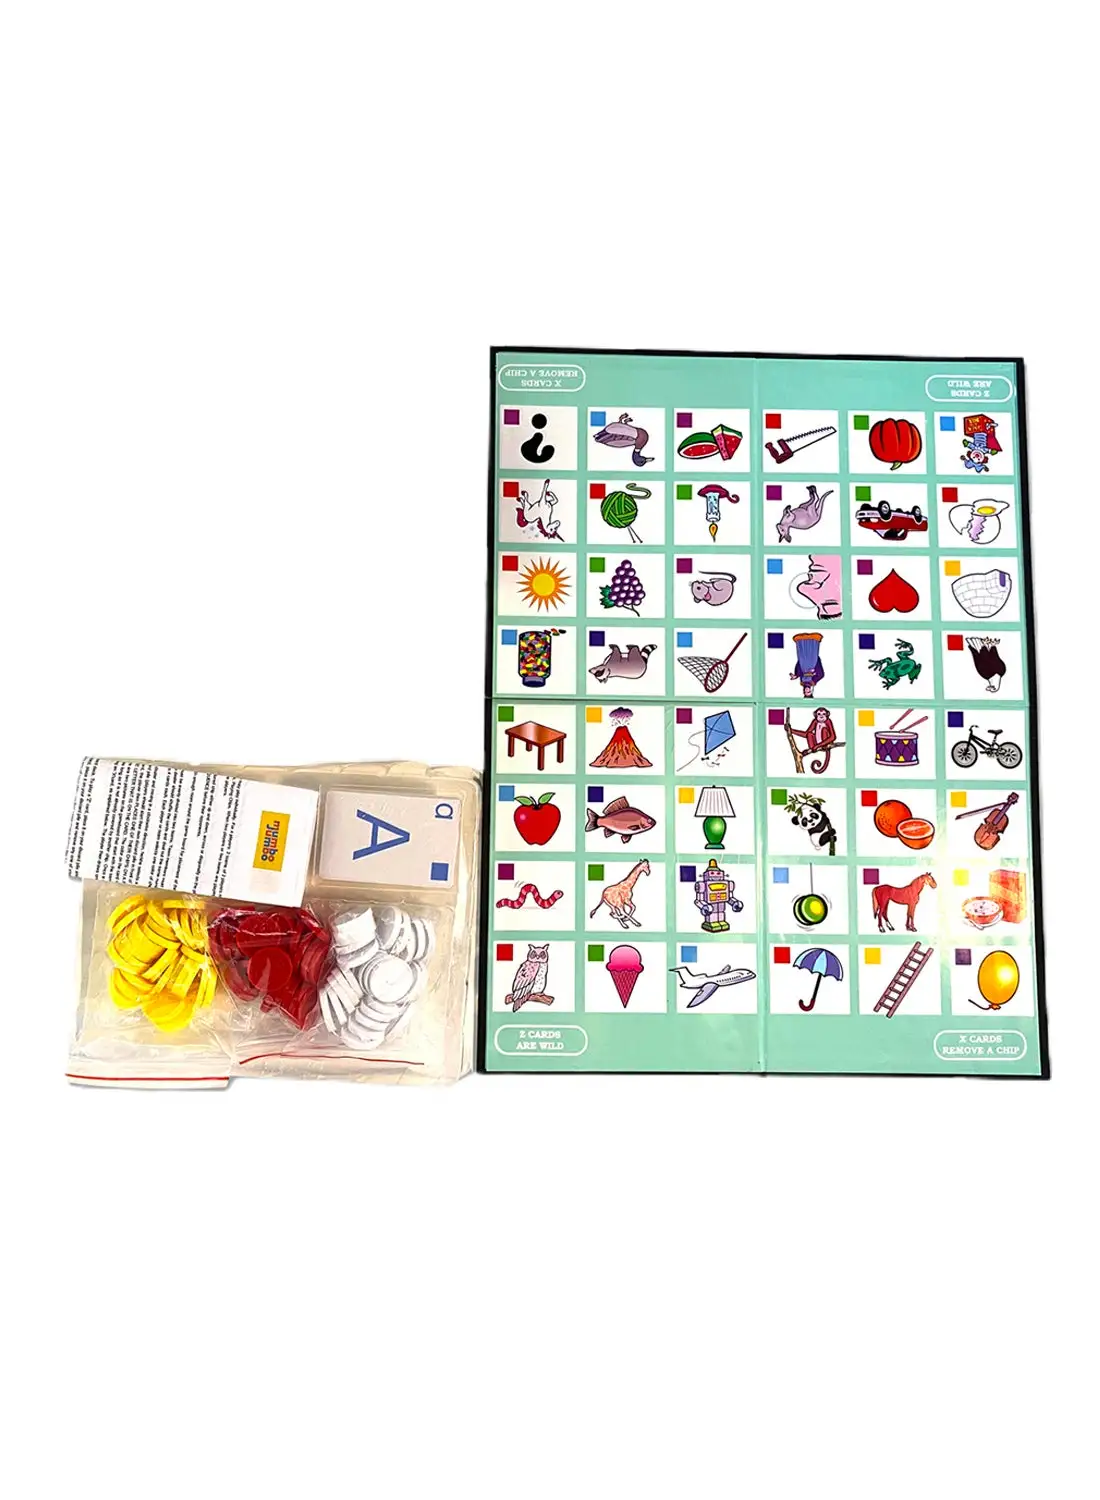 لعبة بطاقات مامبو جامبو ذات جودة عالية من لعبة تسلسل الحيوانات ، تسلسل المرح من الألف إلى الياء للأطفال من سن 4 سنوات فما فوق ، مع دليل إرشادي 25.5 × 20 × 5.5 سم